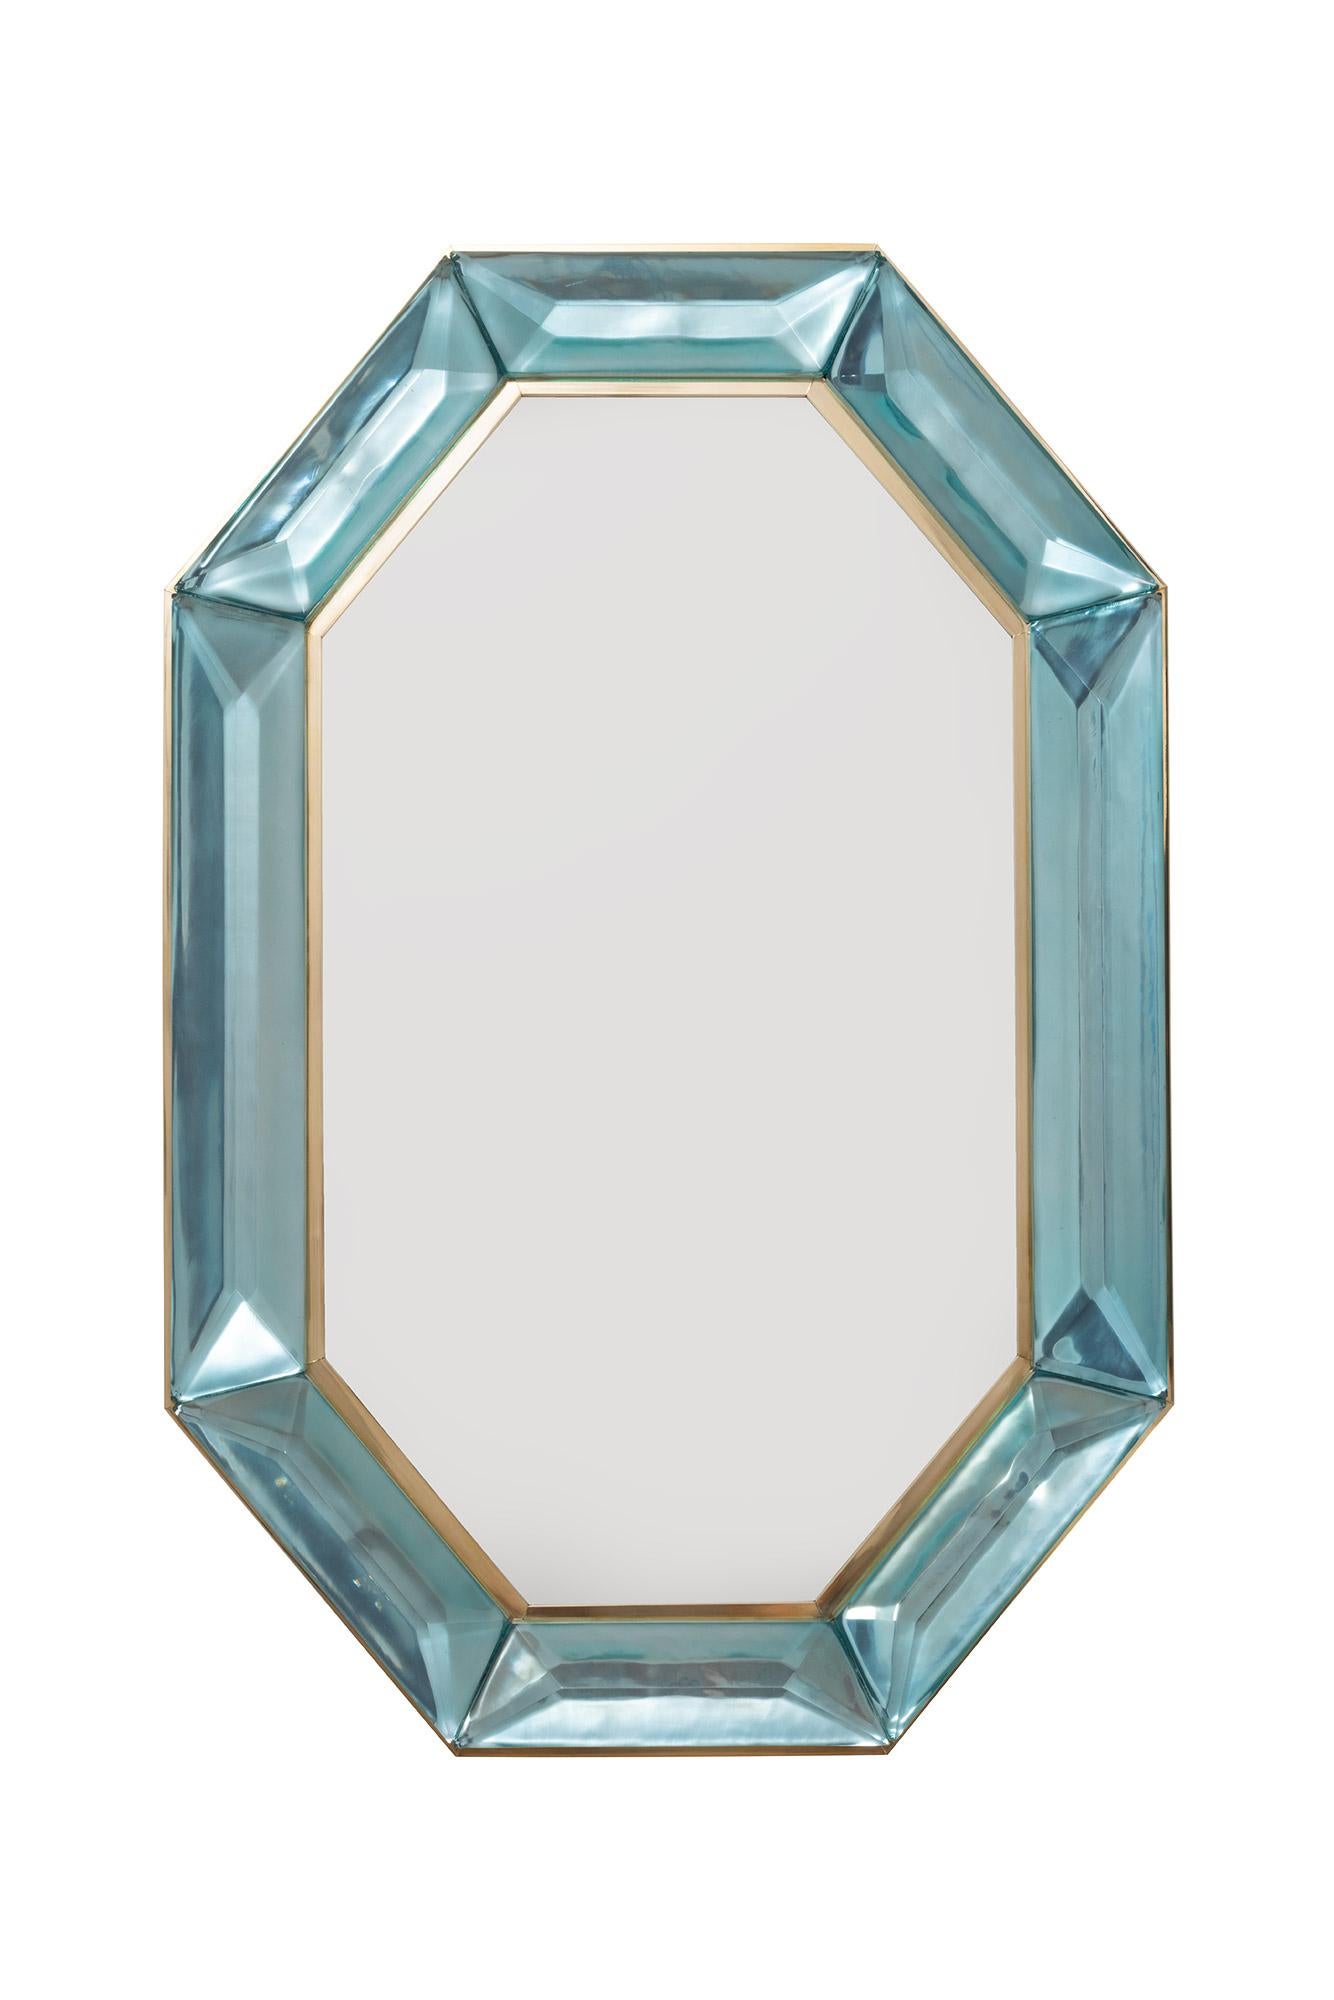 Miroir octogonal sur mesure en verre de Murano bleu Tiffany et laiton, en stock
Bloc de verre bleu Tiffany vif et intense avec des inclusions d'air naturelles.
Motif à facettes hautement poli
(a) Gallery Gallery tout autour
Chaque miroir est un luxe